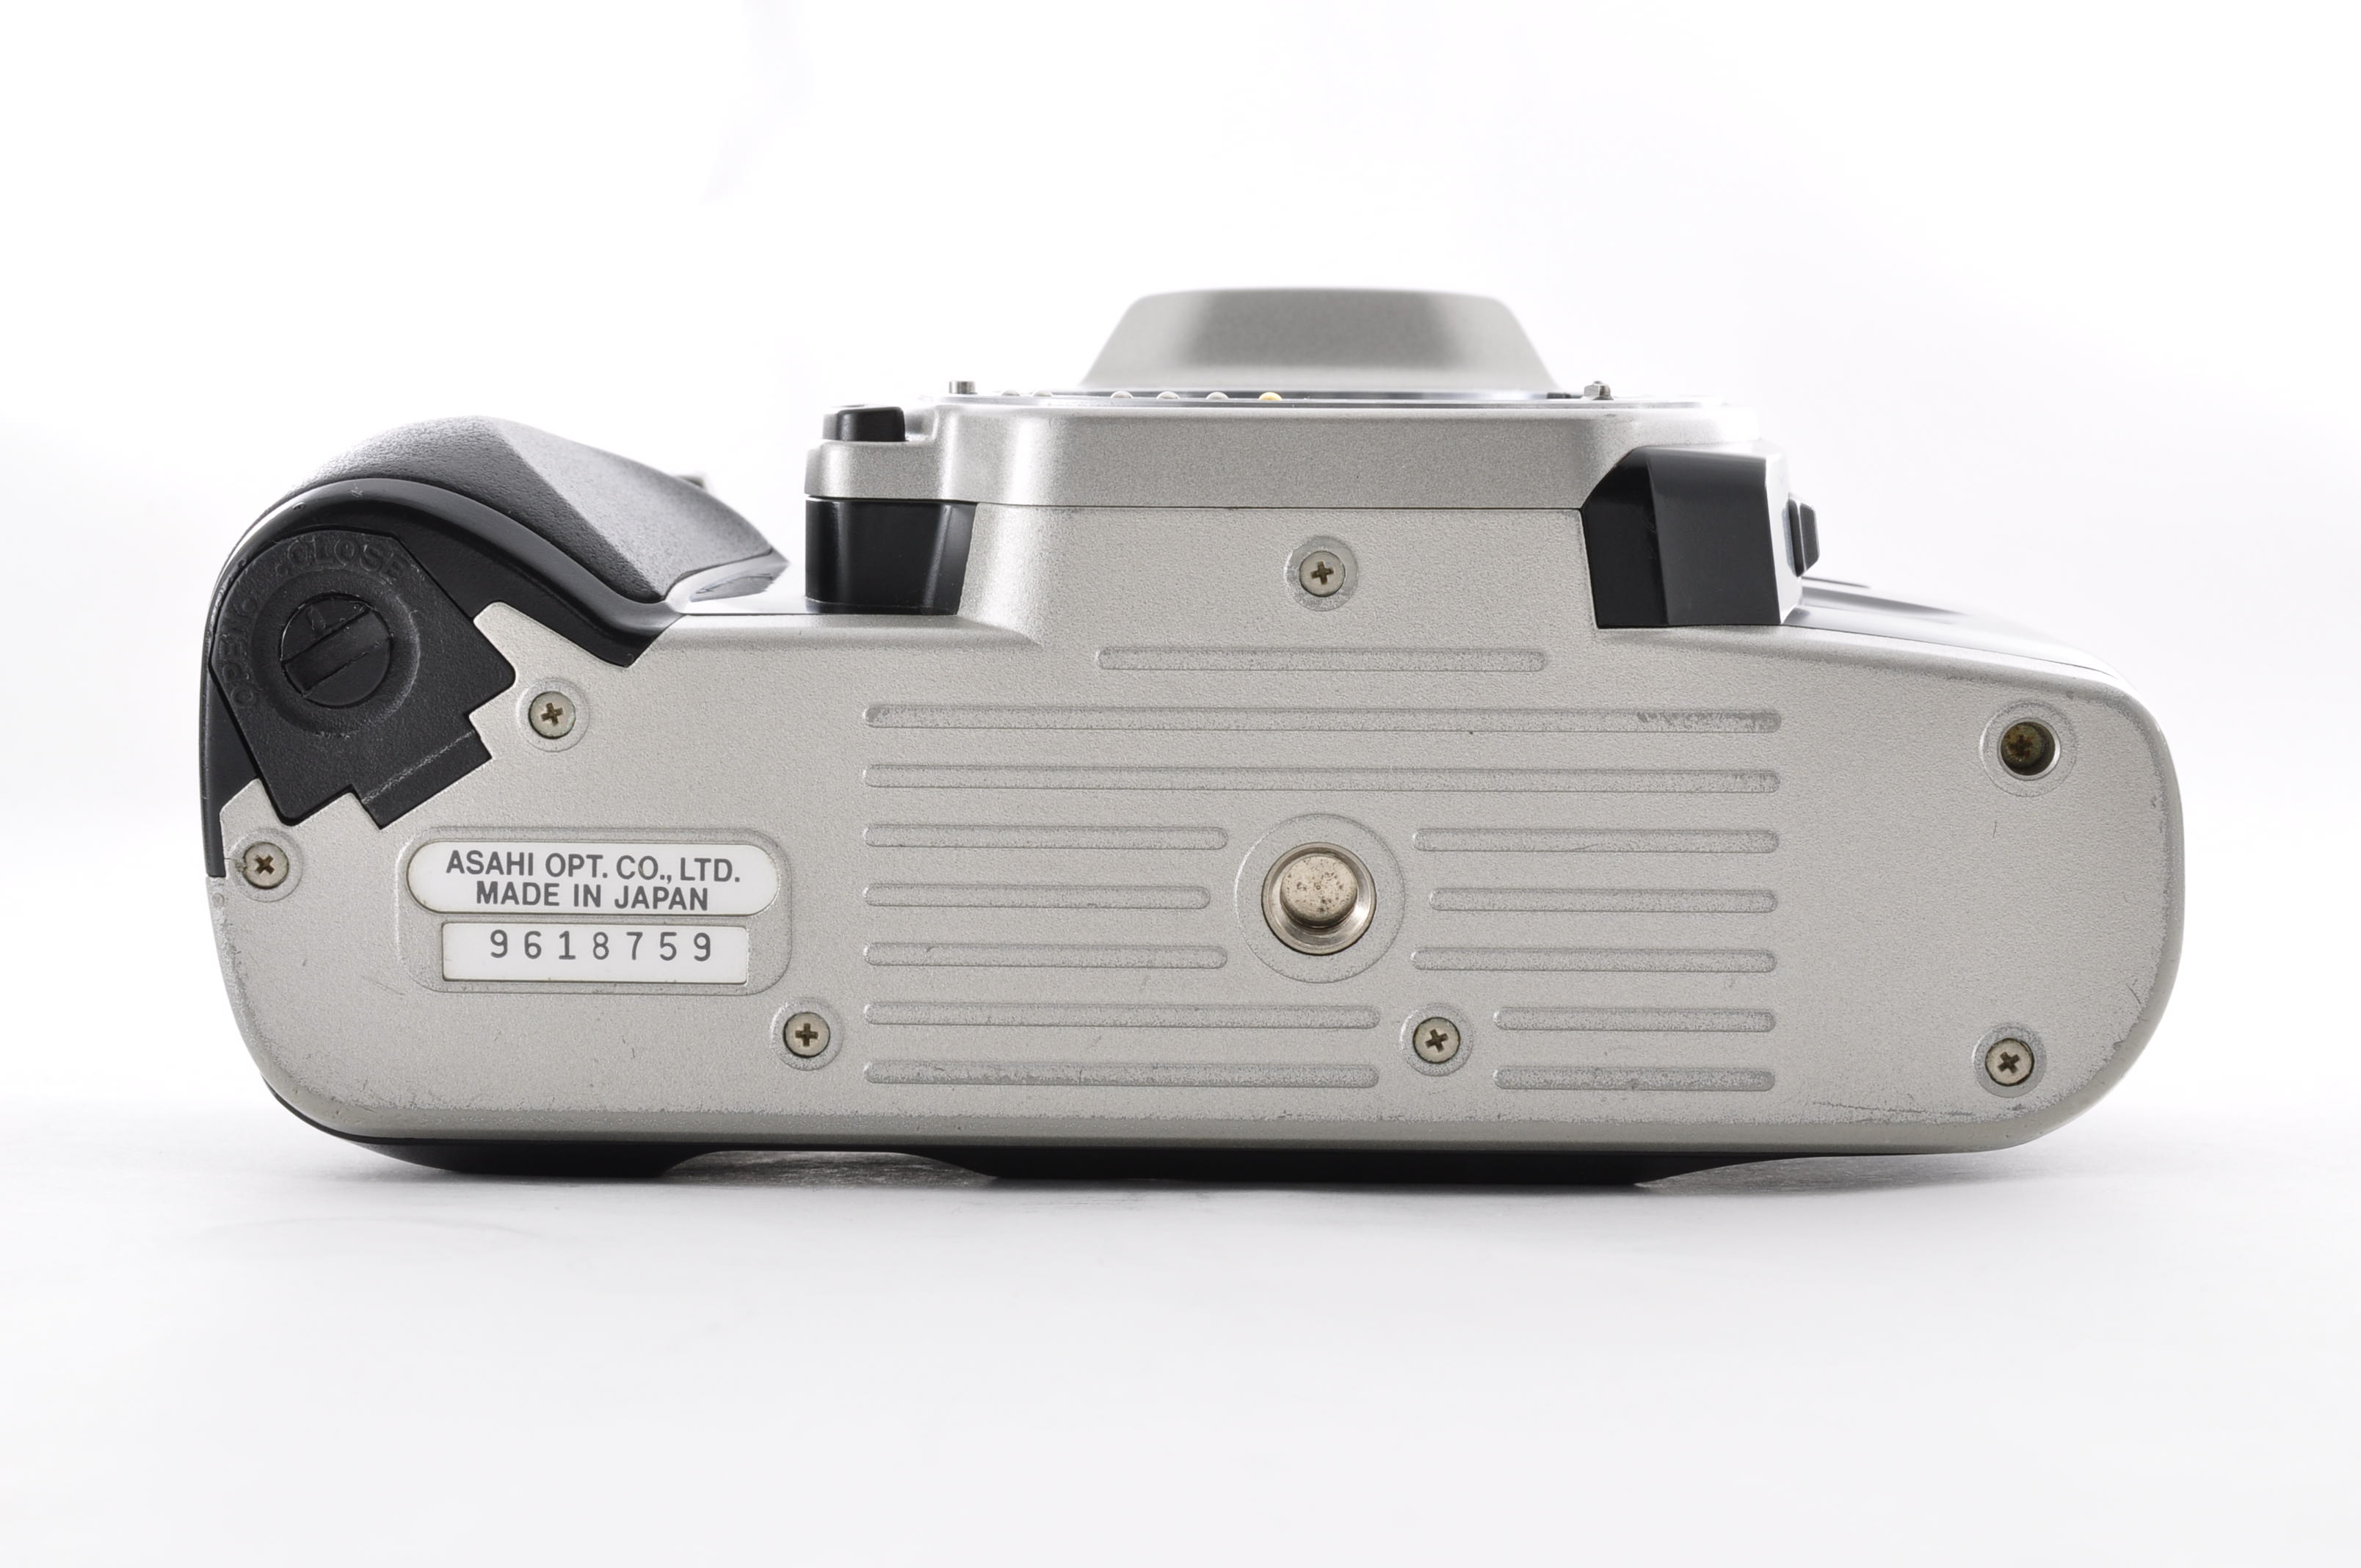 PENTAX MZ-7 35mm Film Camera [Near Mint] + Tamron 28-200mm F3.5-5.6 From Japan img11